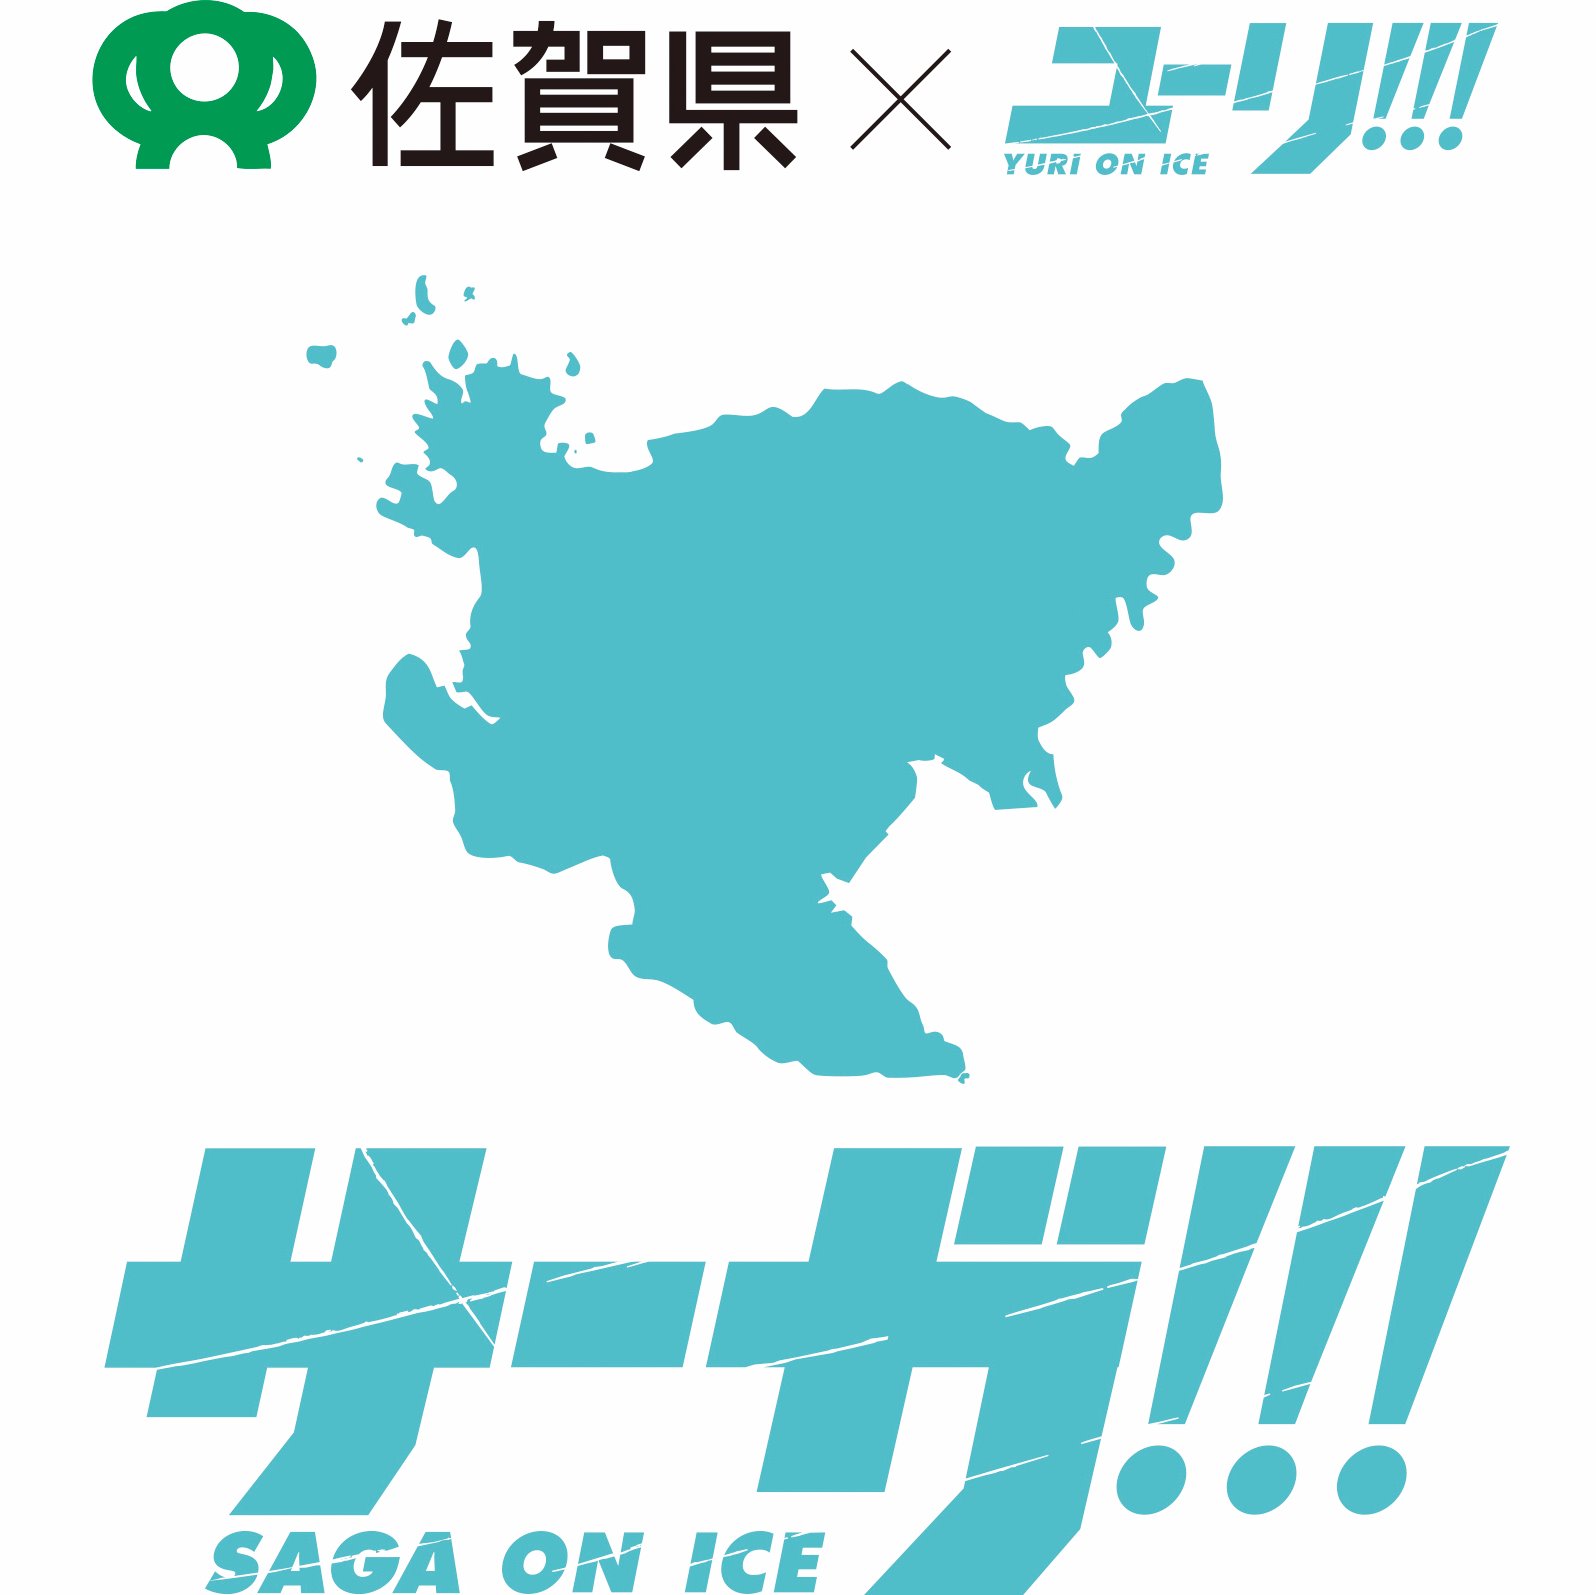 佐賀県 × ユーリ!!! on ICE『サーガ!!! on ICE』公式twitterです。
2017年9月から開催される唐津市とユーリ!!! on ICEのコラボイベント『サーガ!!! on ICE 第２弾』公式アカウントは「@sagaonice2017」です。